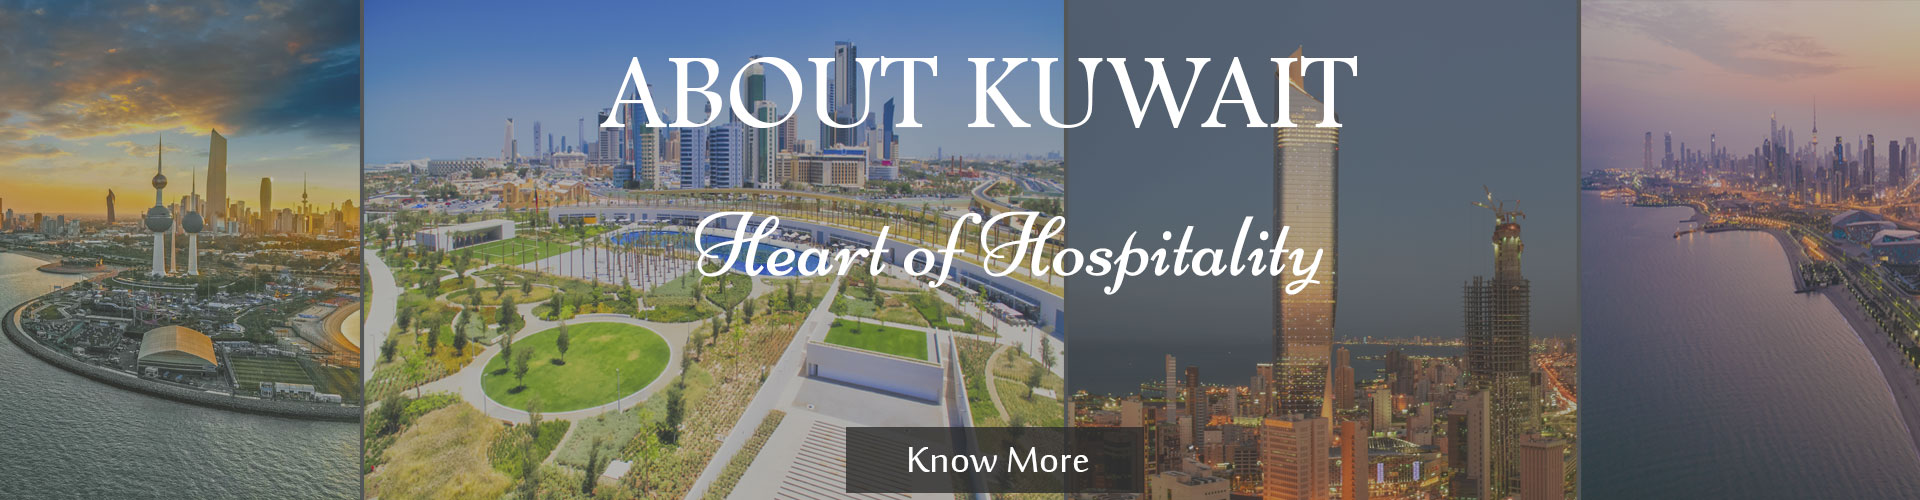 About Kuwait